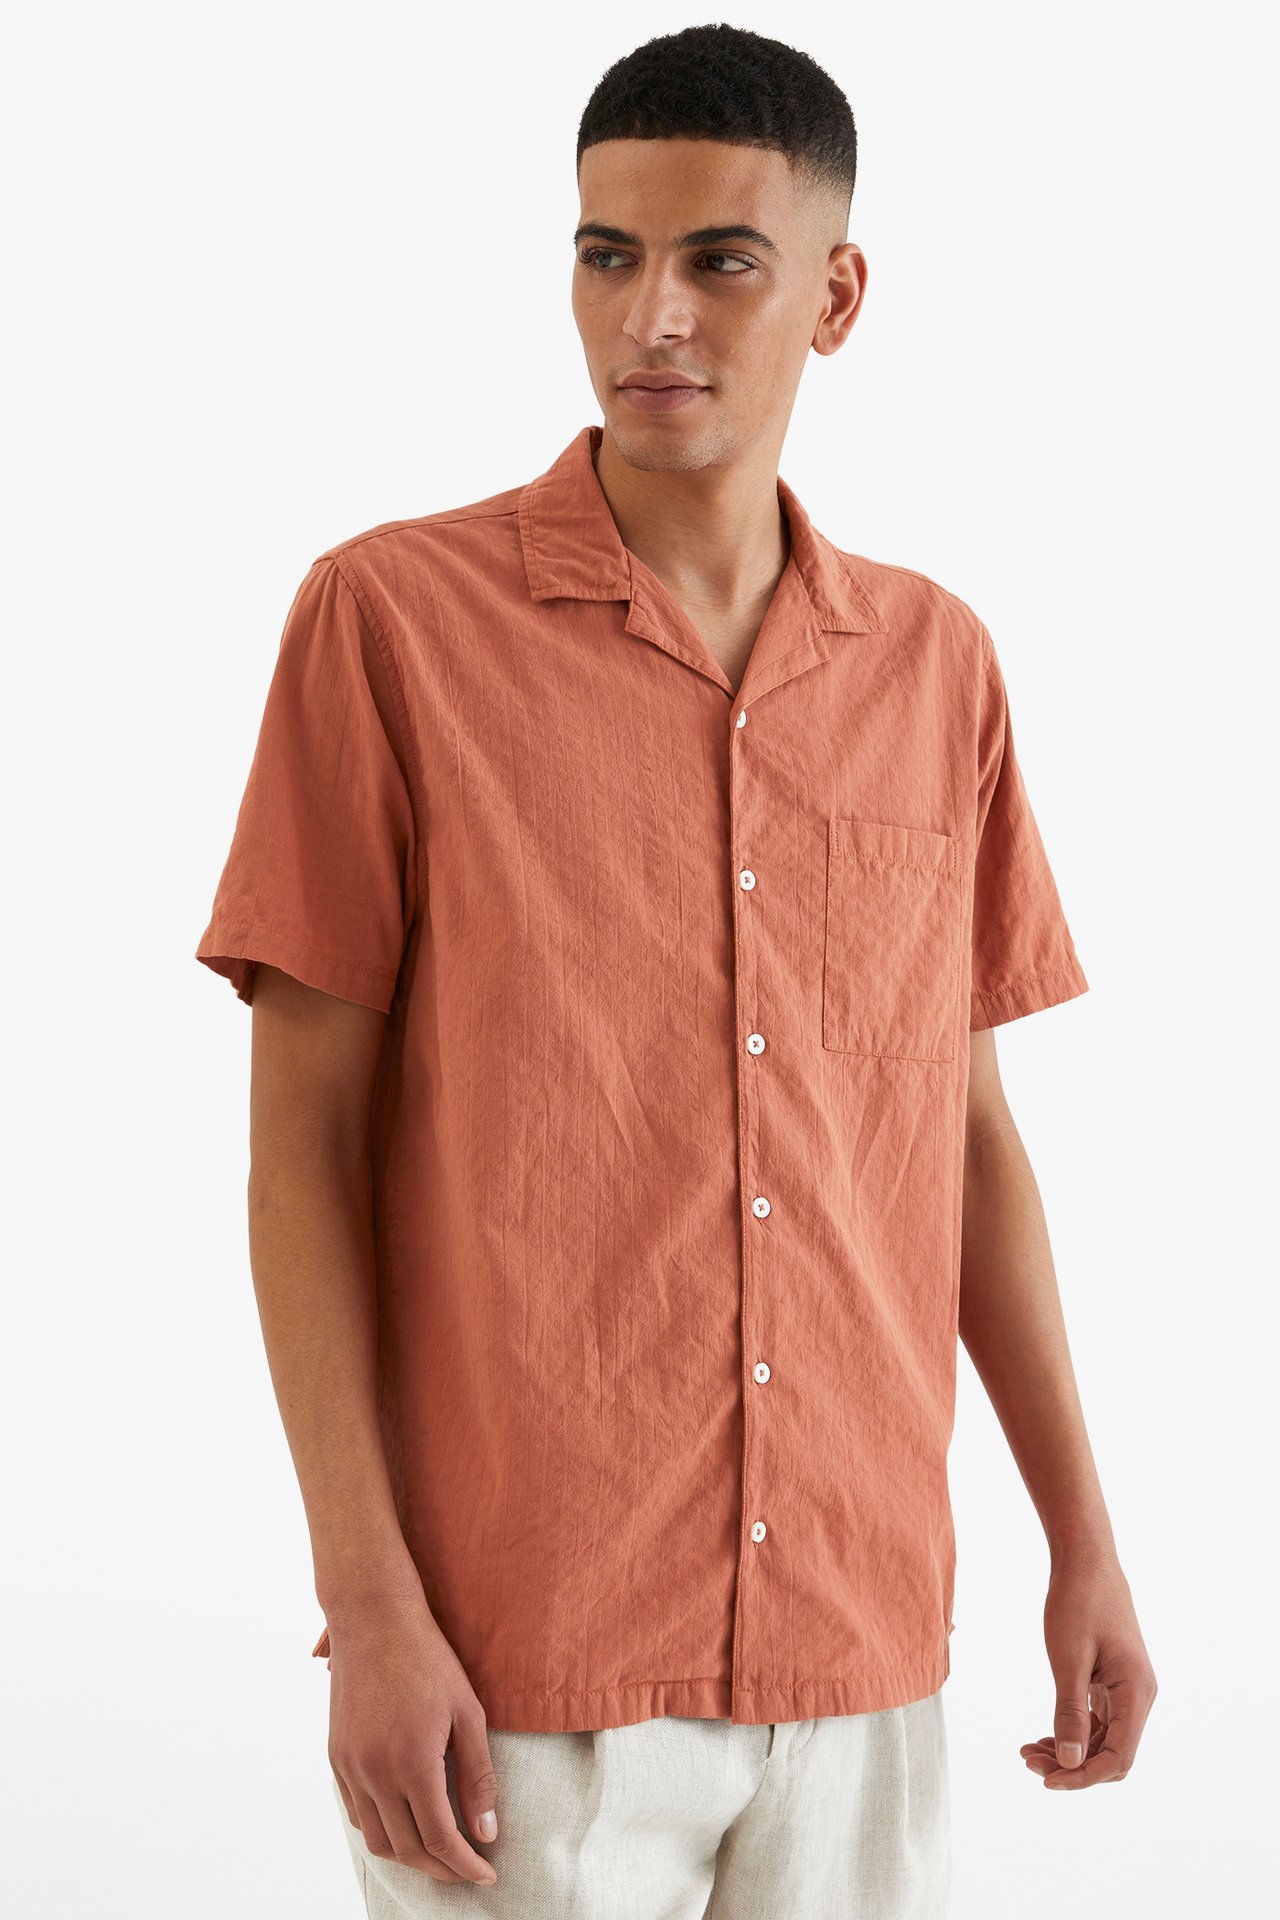 Resortskjorte i seersucker - Brun - 189cm / Storlek: M - 2